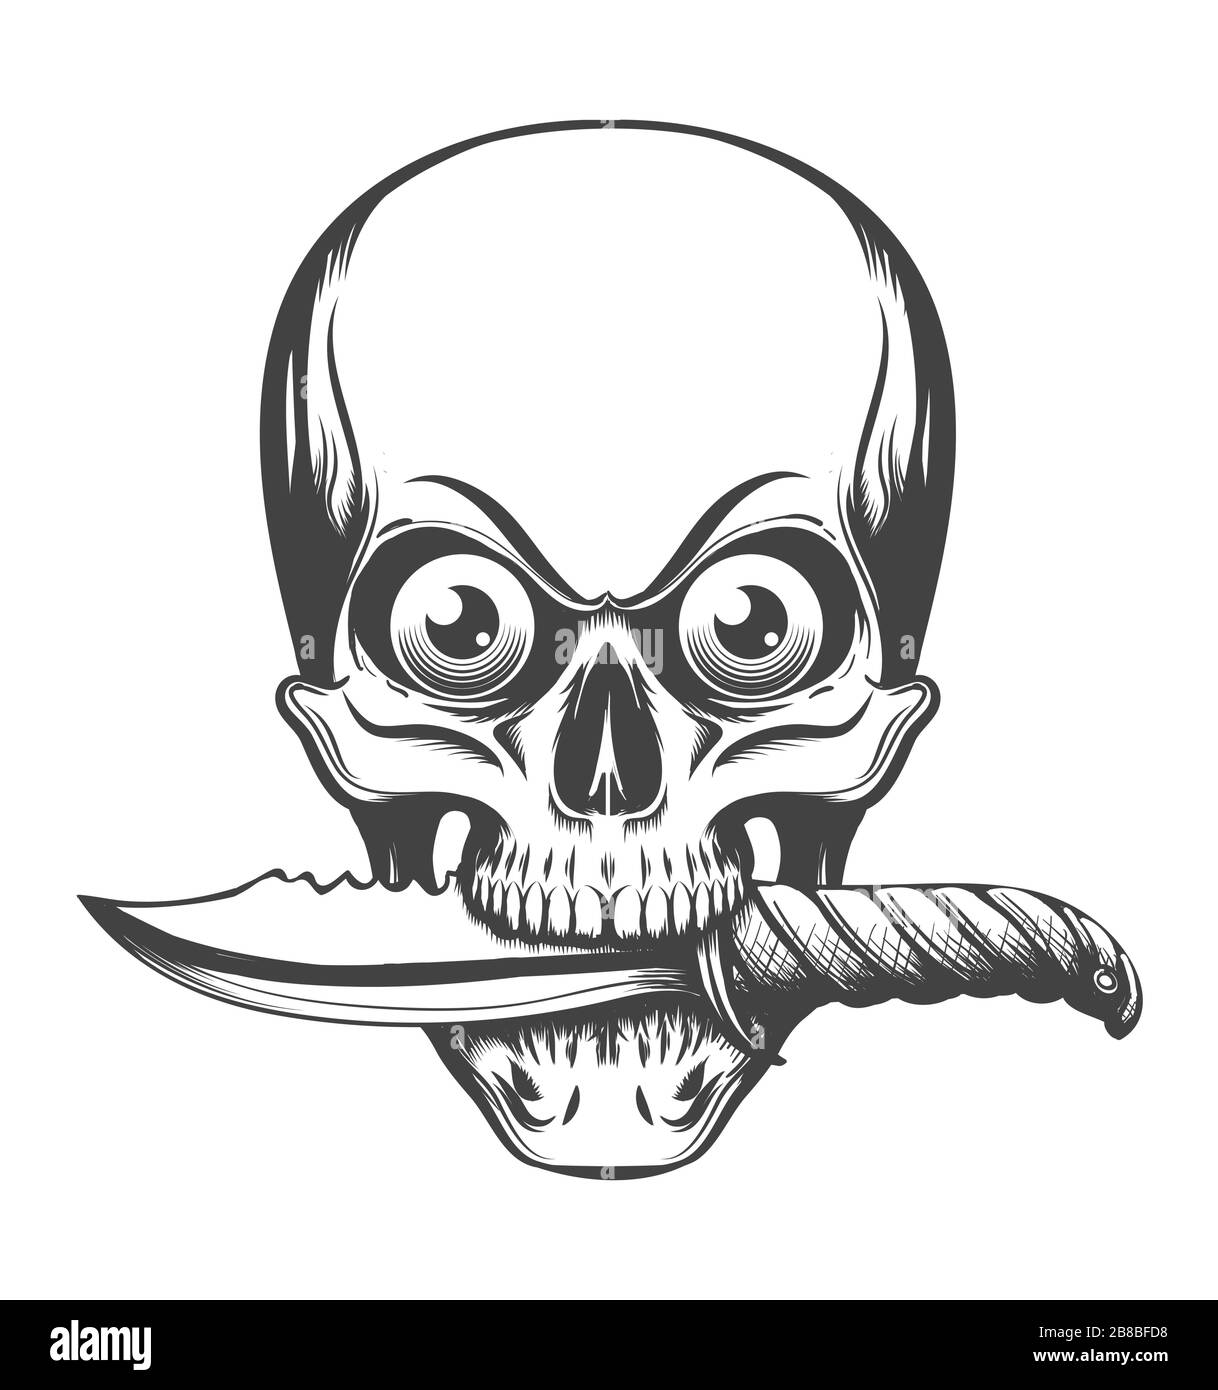 Il cranio umano con gli occhi tiene il coltello in denti disegnati in stile tatuaggio. Illustrazione vettoriale. Illustrazione Vettoriale